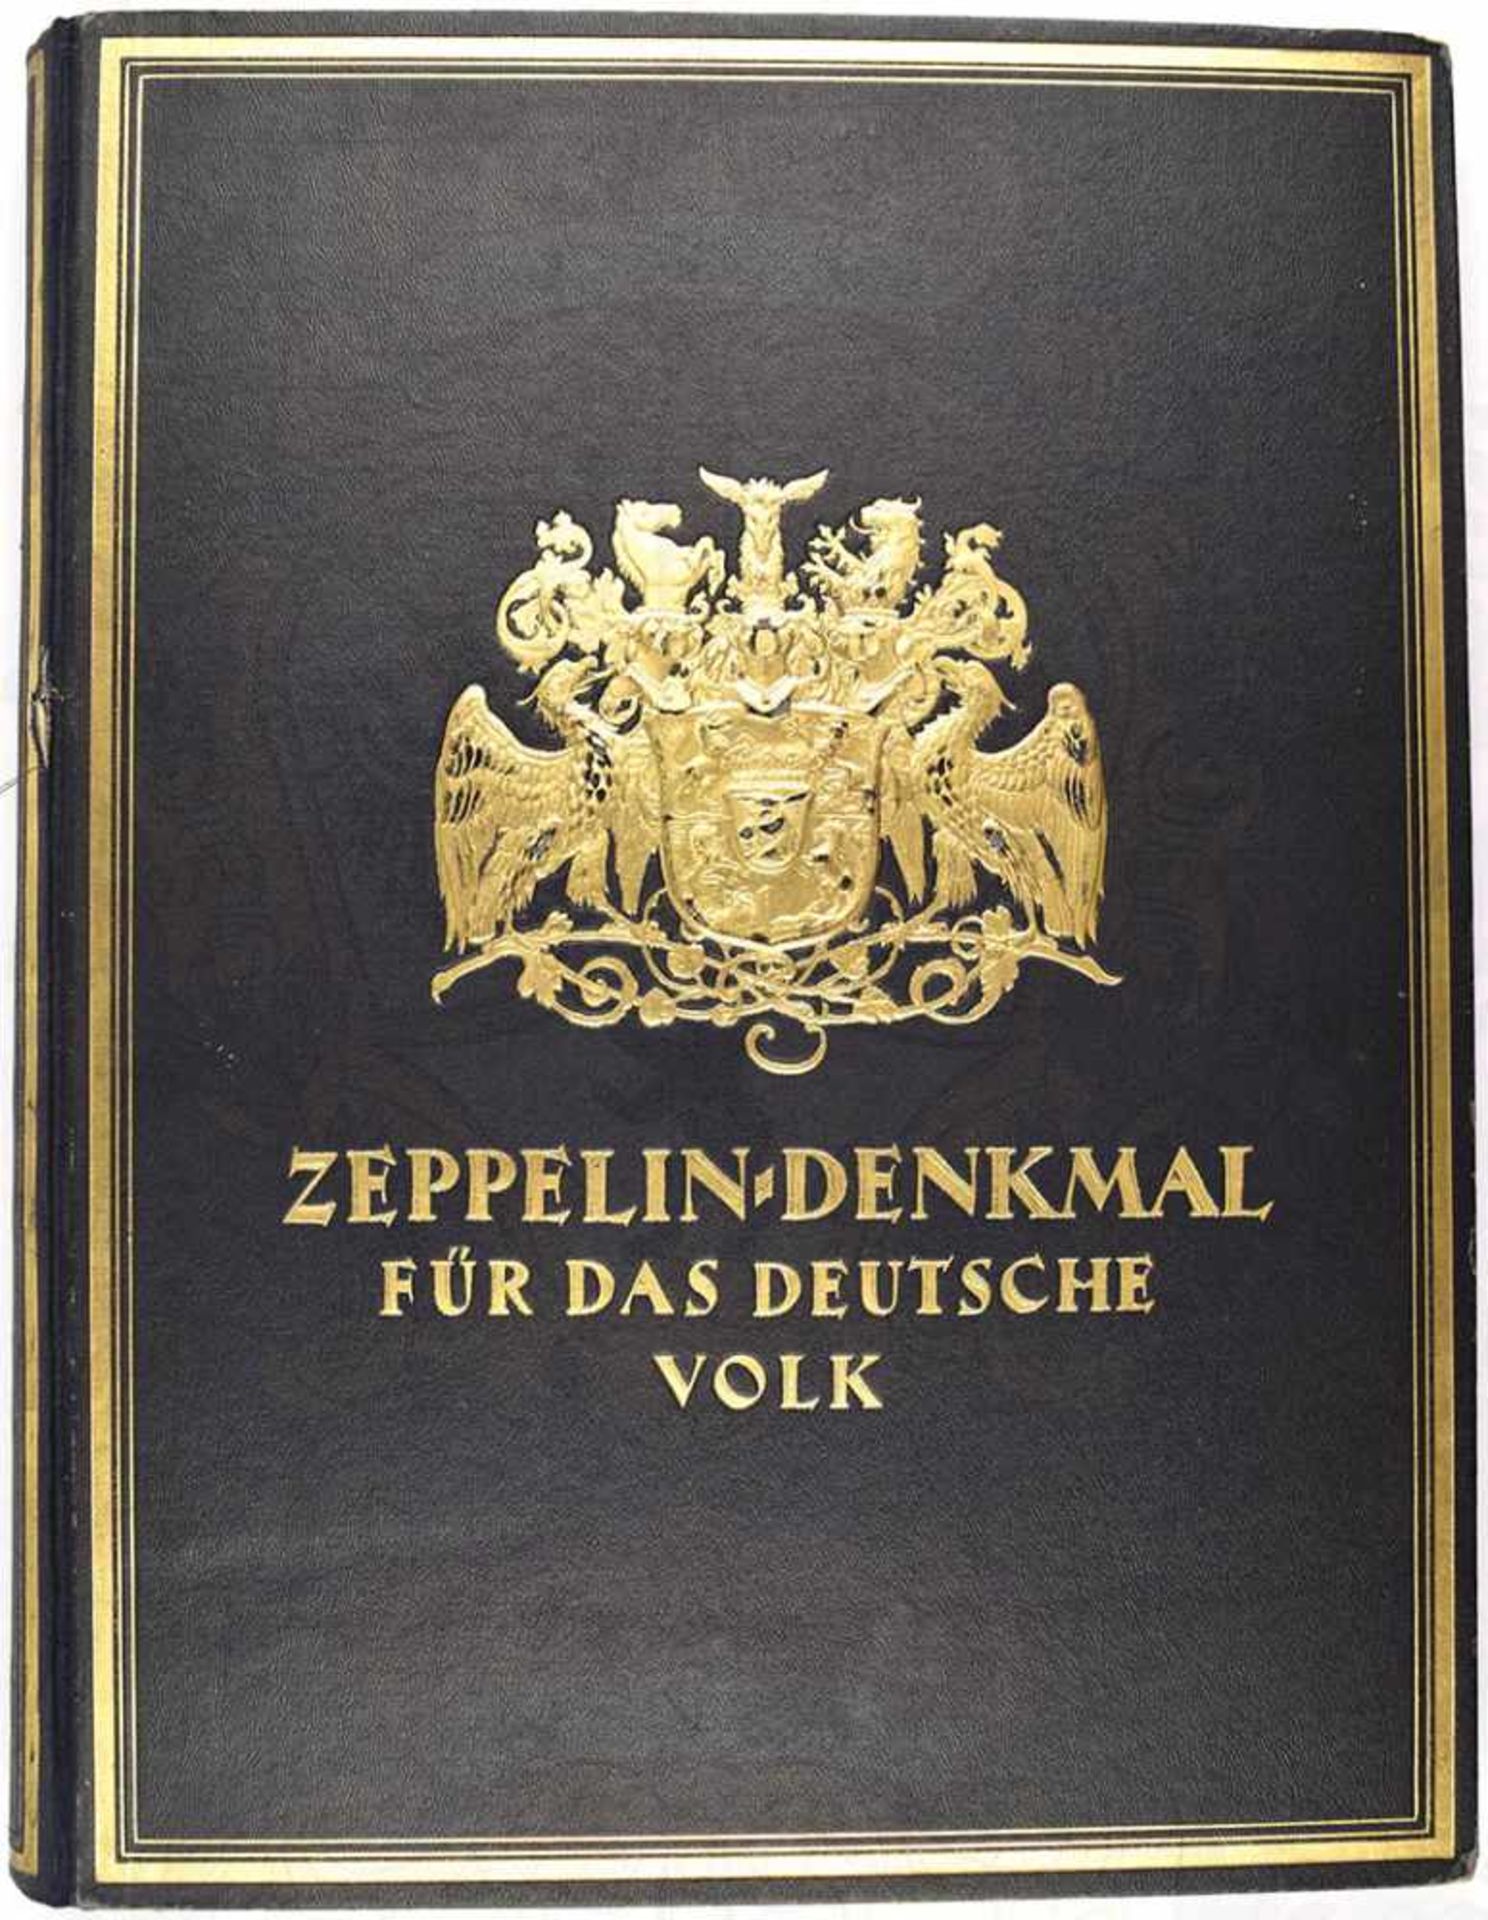 ZEPPELIN-DENKMAL FÜR DAS DEUTSCHE VOLK, Stuttgart o. J. (um 1927), 388 S., 4 Farbtafeln, zahll.